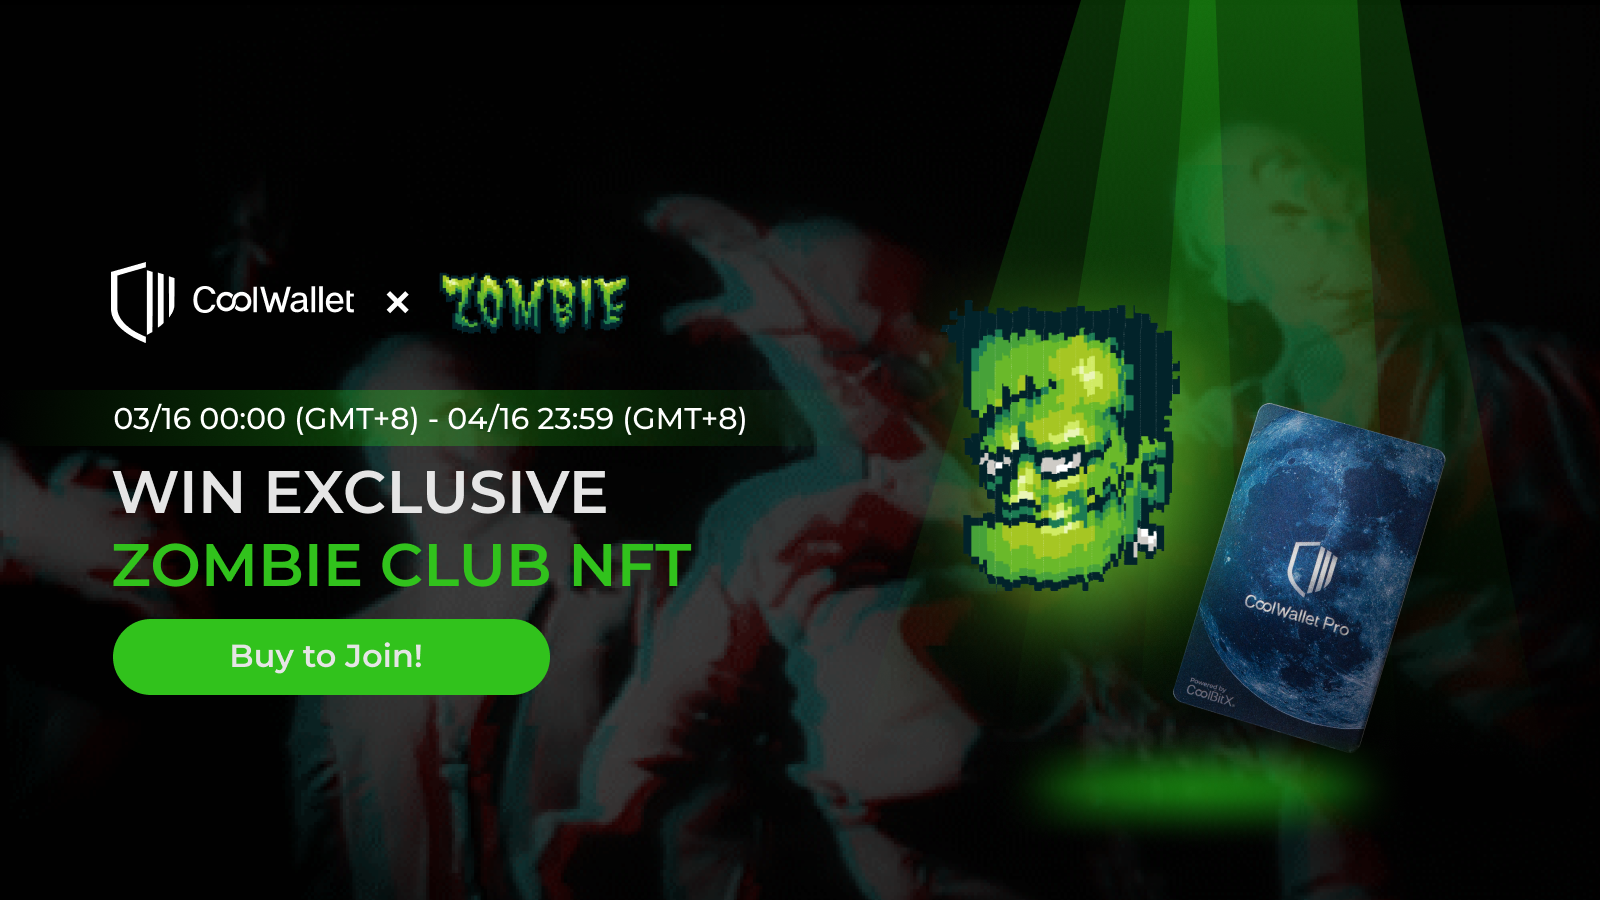 Zombie Club NFT